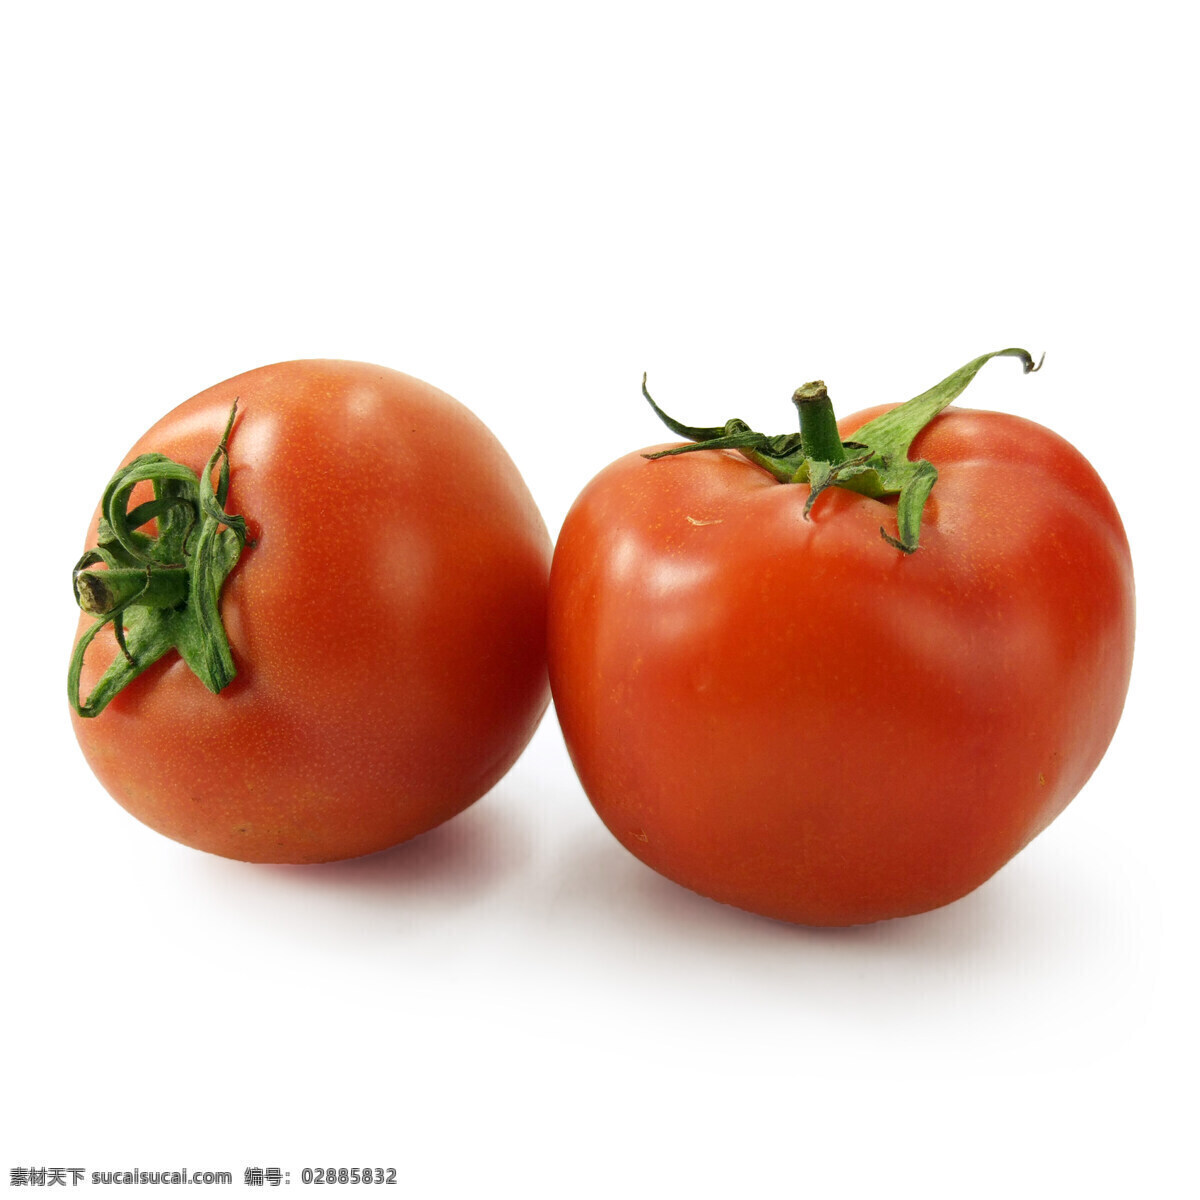 西红柿 番茄 西红柿图片 西红柿素材 西红柿摄影 生物世界 蔬菜